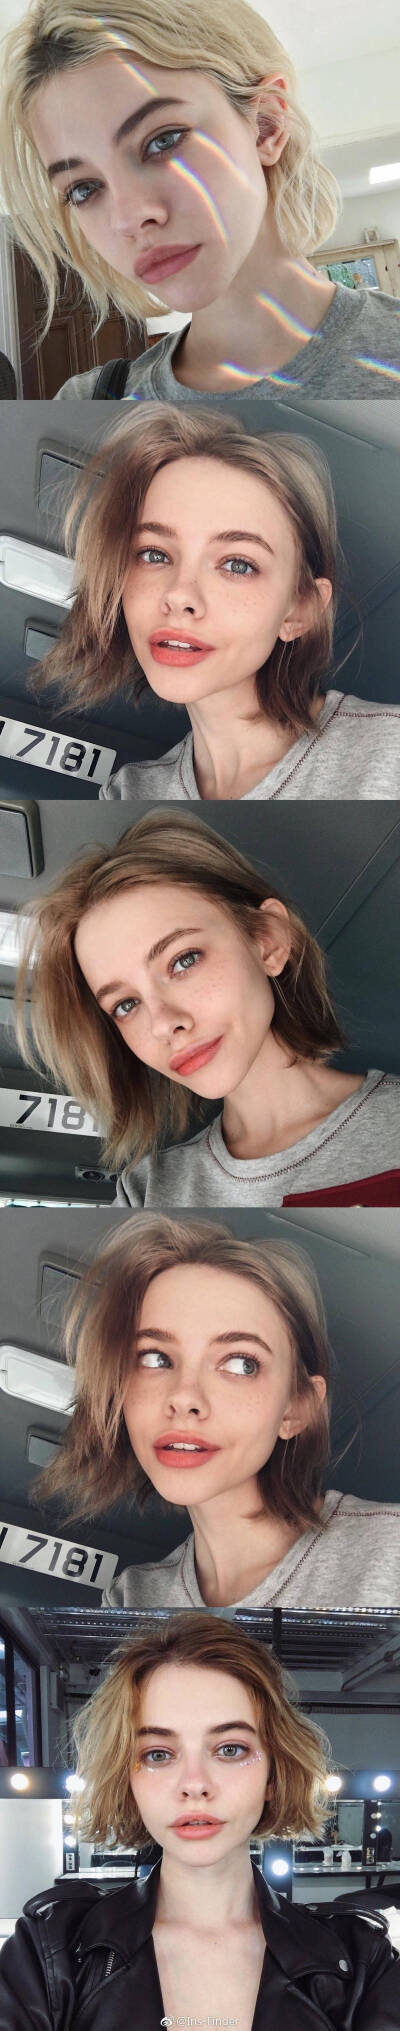 俄罗斯短发女模特